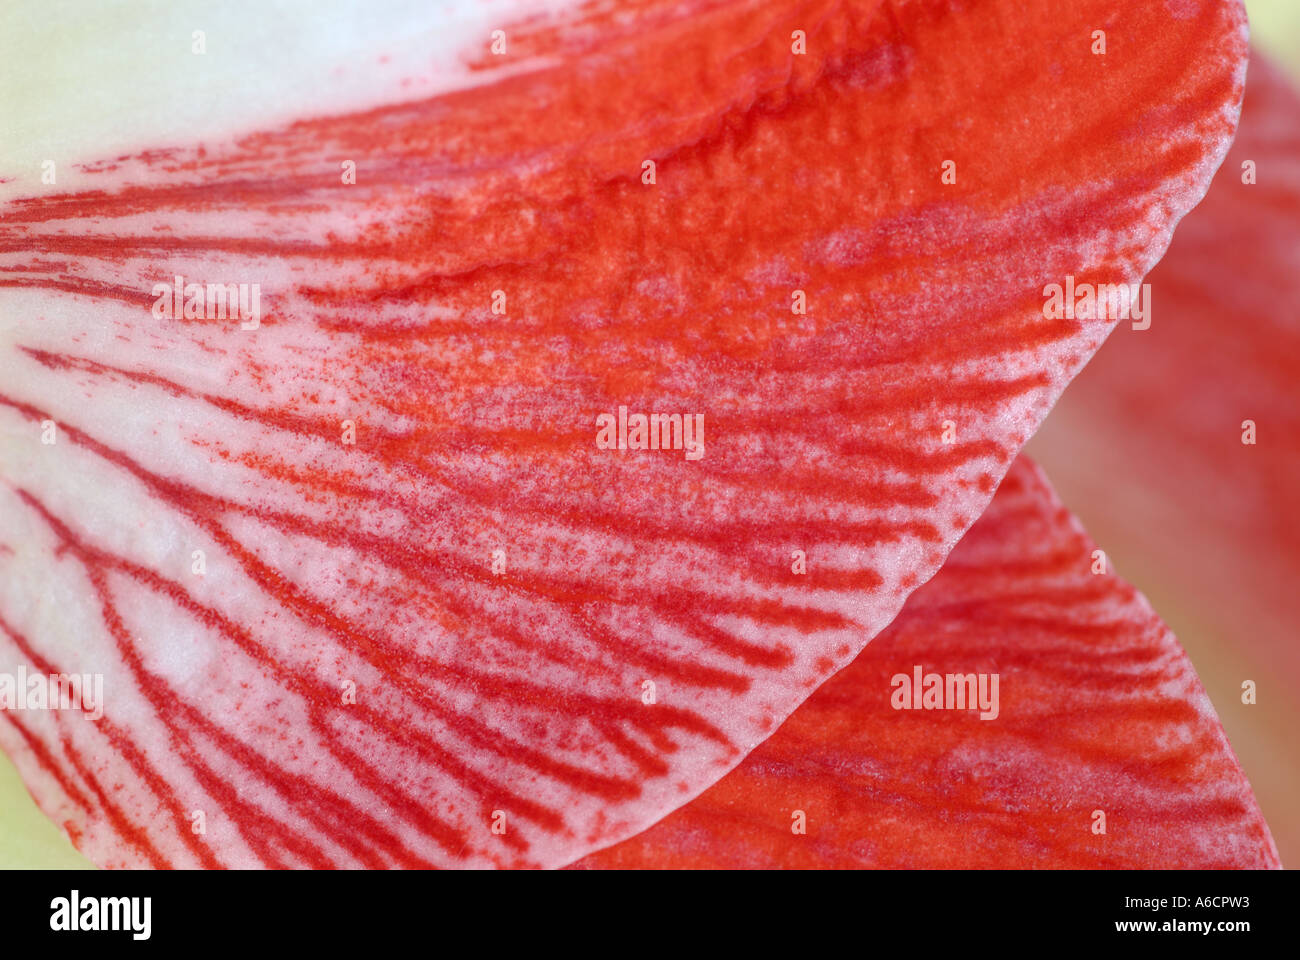 Abstrakt Nahaufnahme von einem roten Amaryllis Blume Blütenblatt Adern Stockfoto